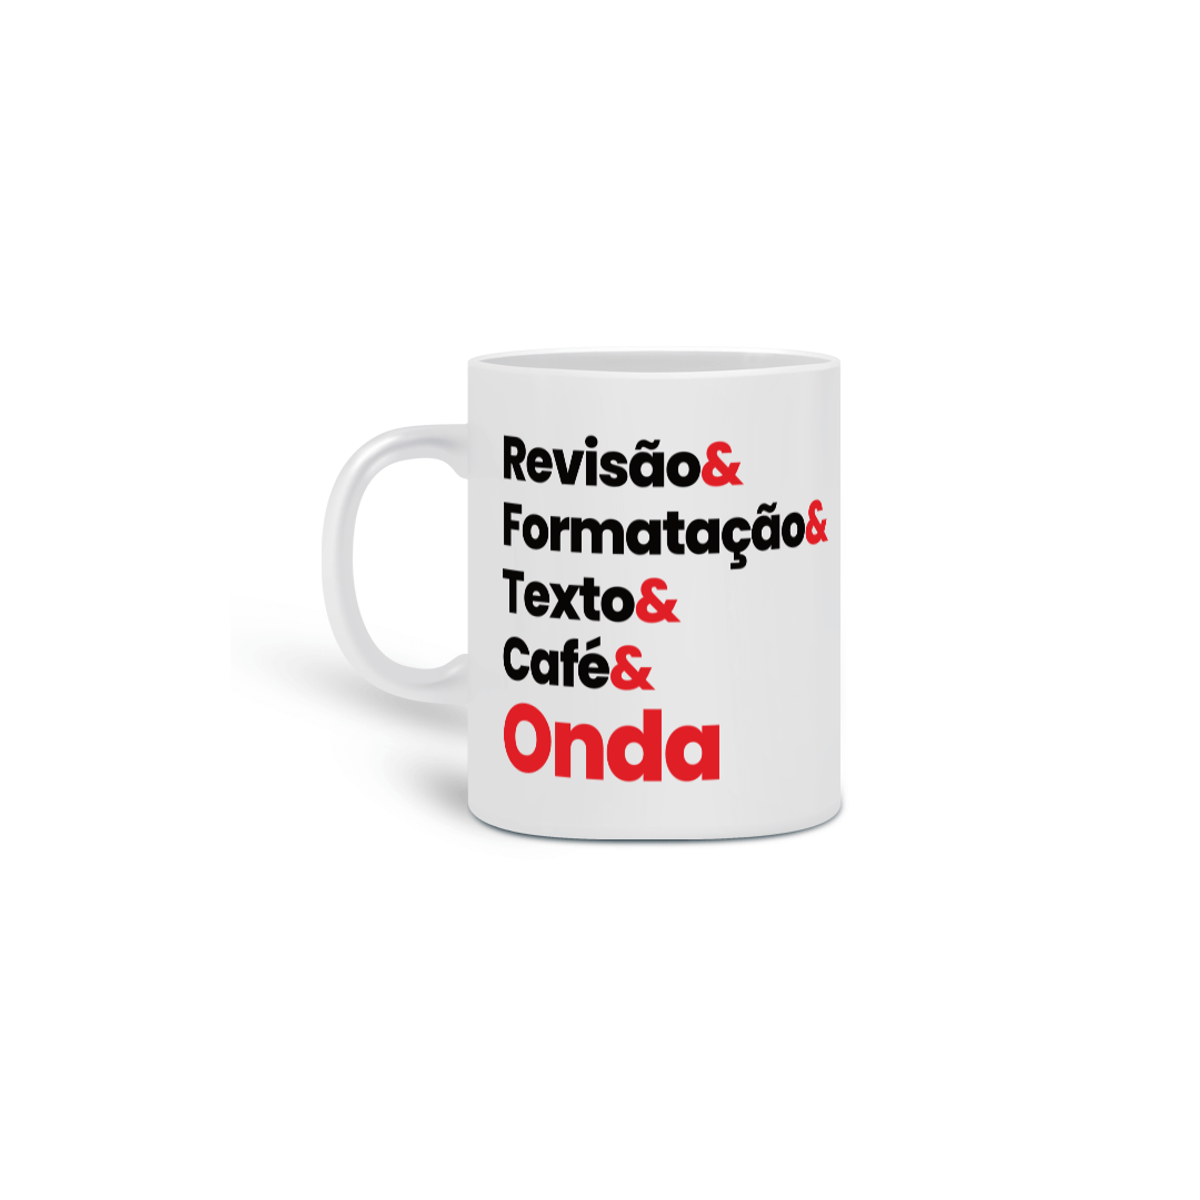 Nome do produto: Revião& Formatação& Texto& Café& Onda